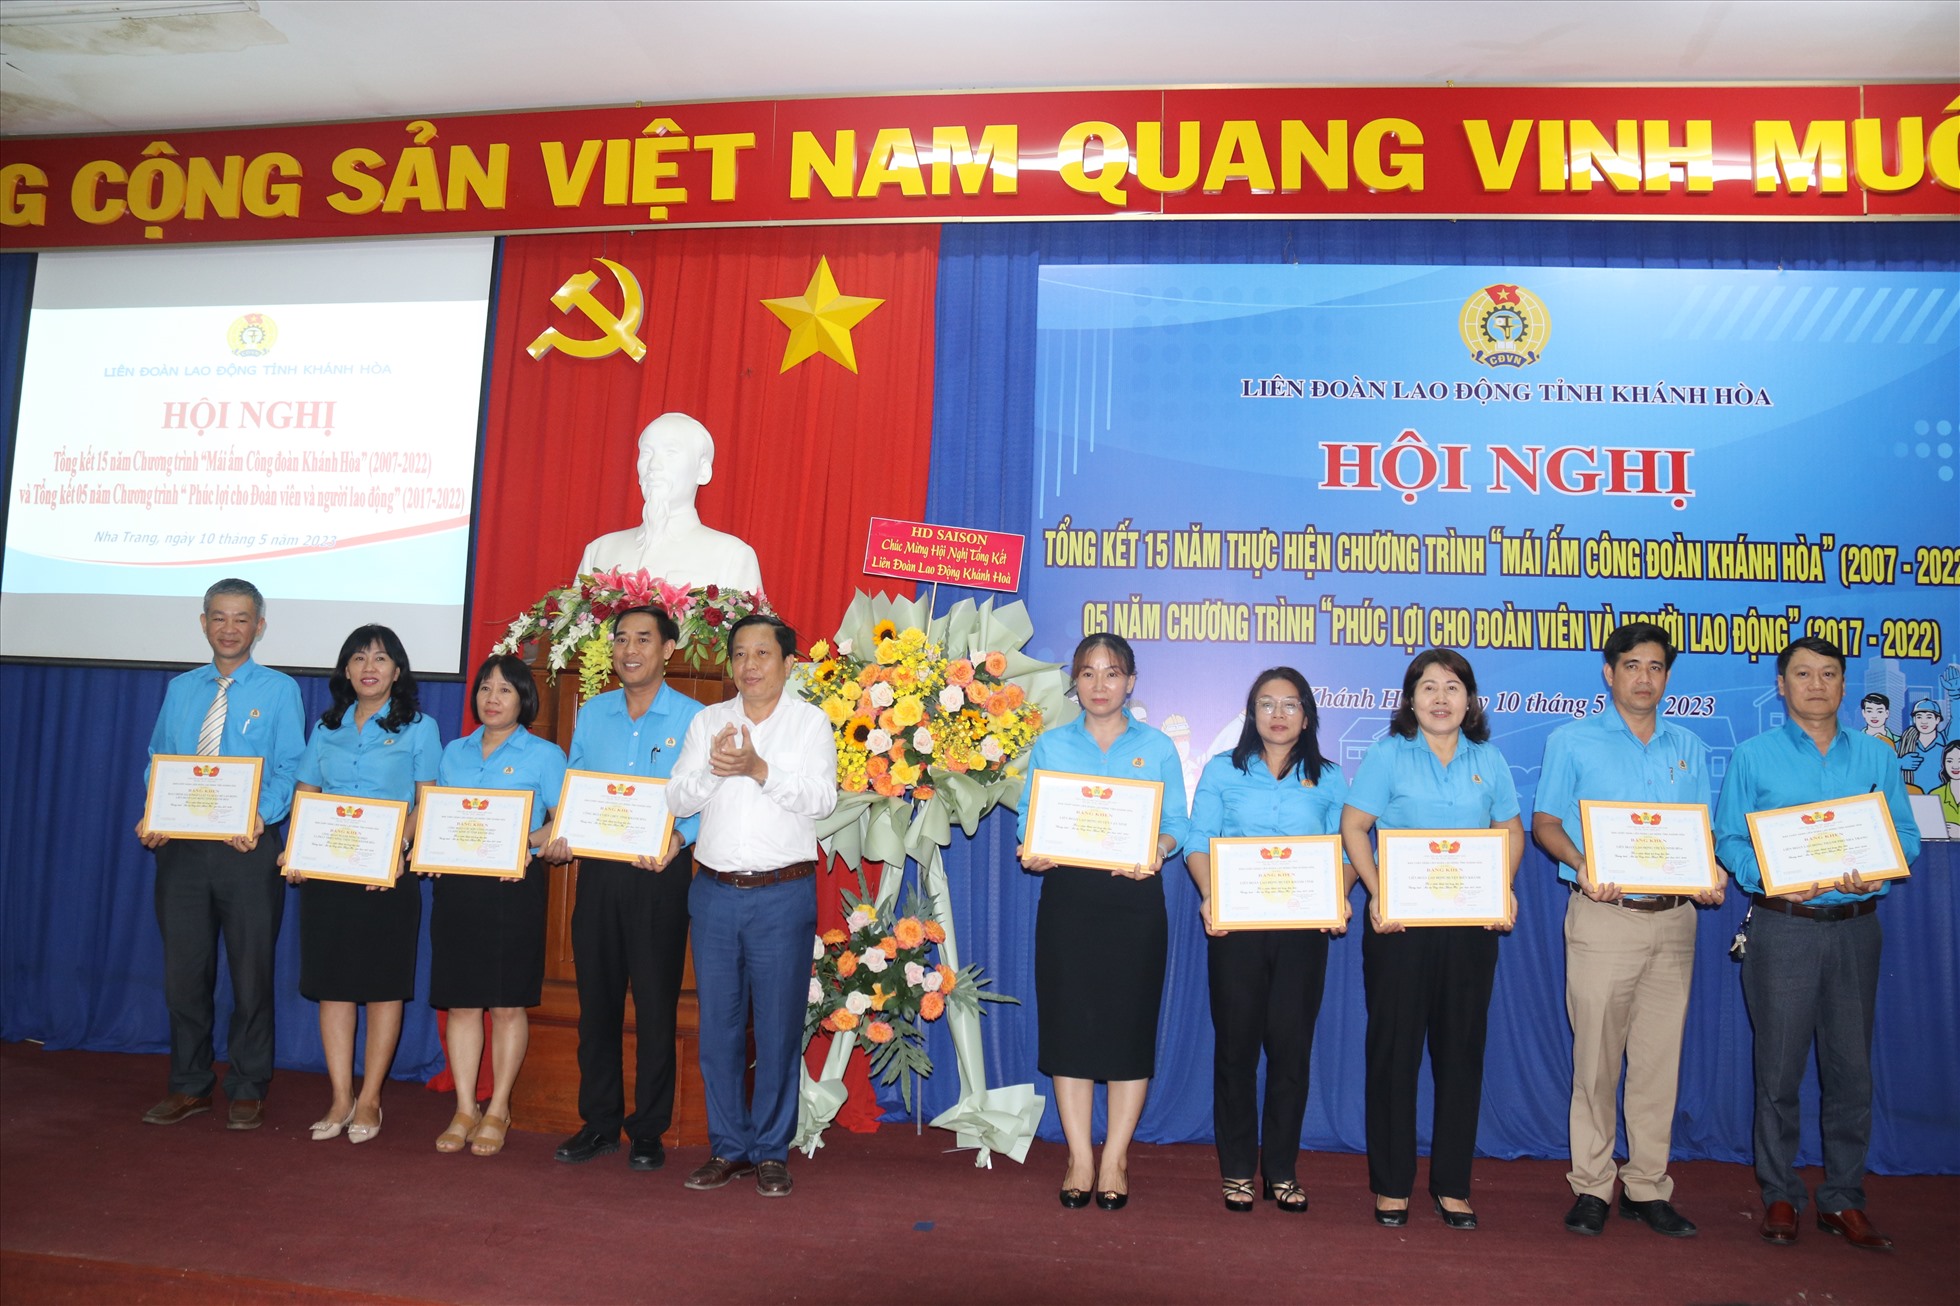 Khen thưởng các tập thể có nhiều đóng góp cho chương trình Mái ấm Công đoàn Khánh Hòa giai đoạn 2007-2022. Ảnh: Phương Linh